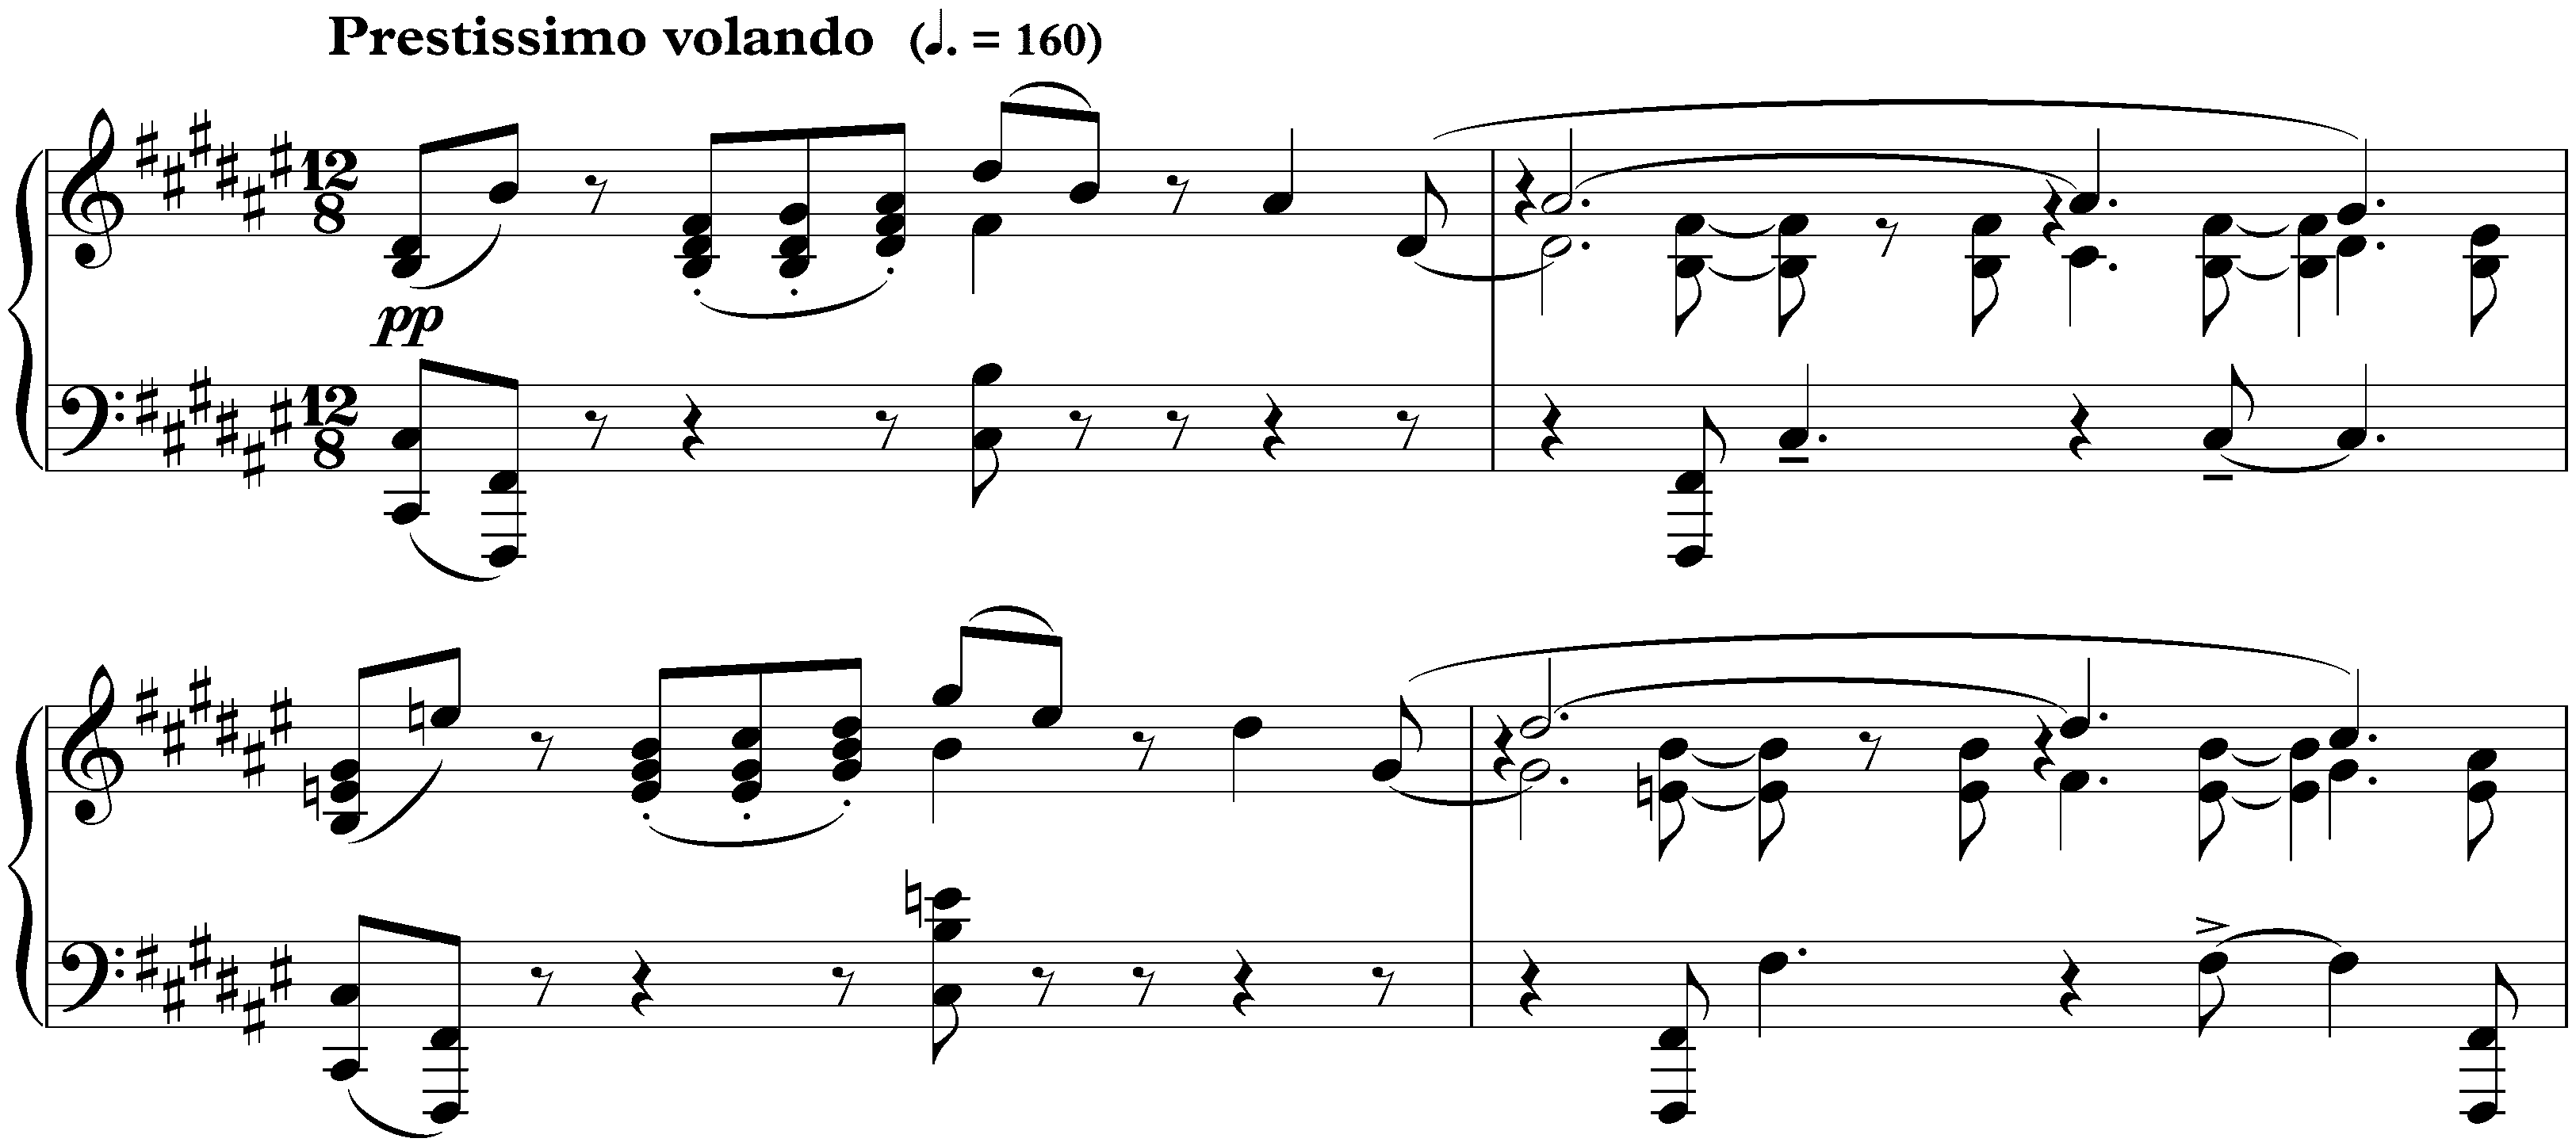 Sonata no. 4 in F-sharp major, op. 30; 2. Prestissimo volando